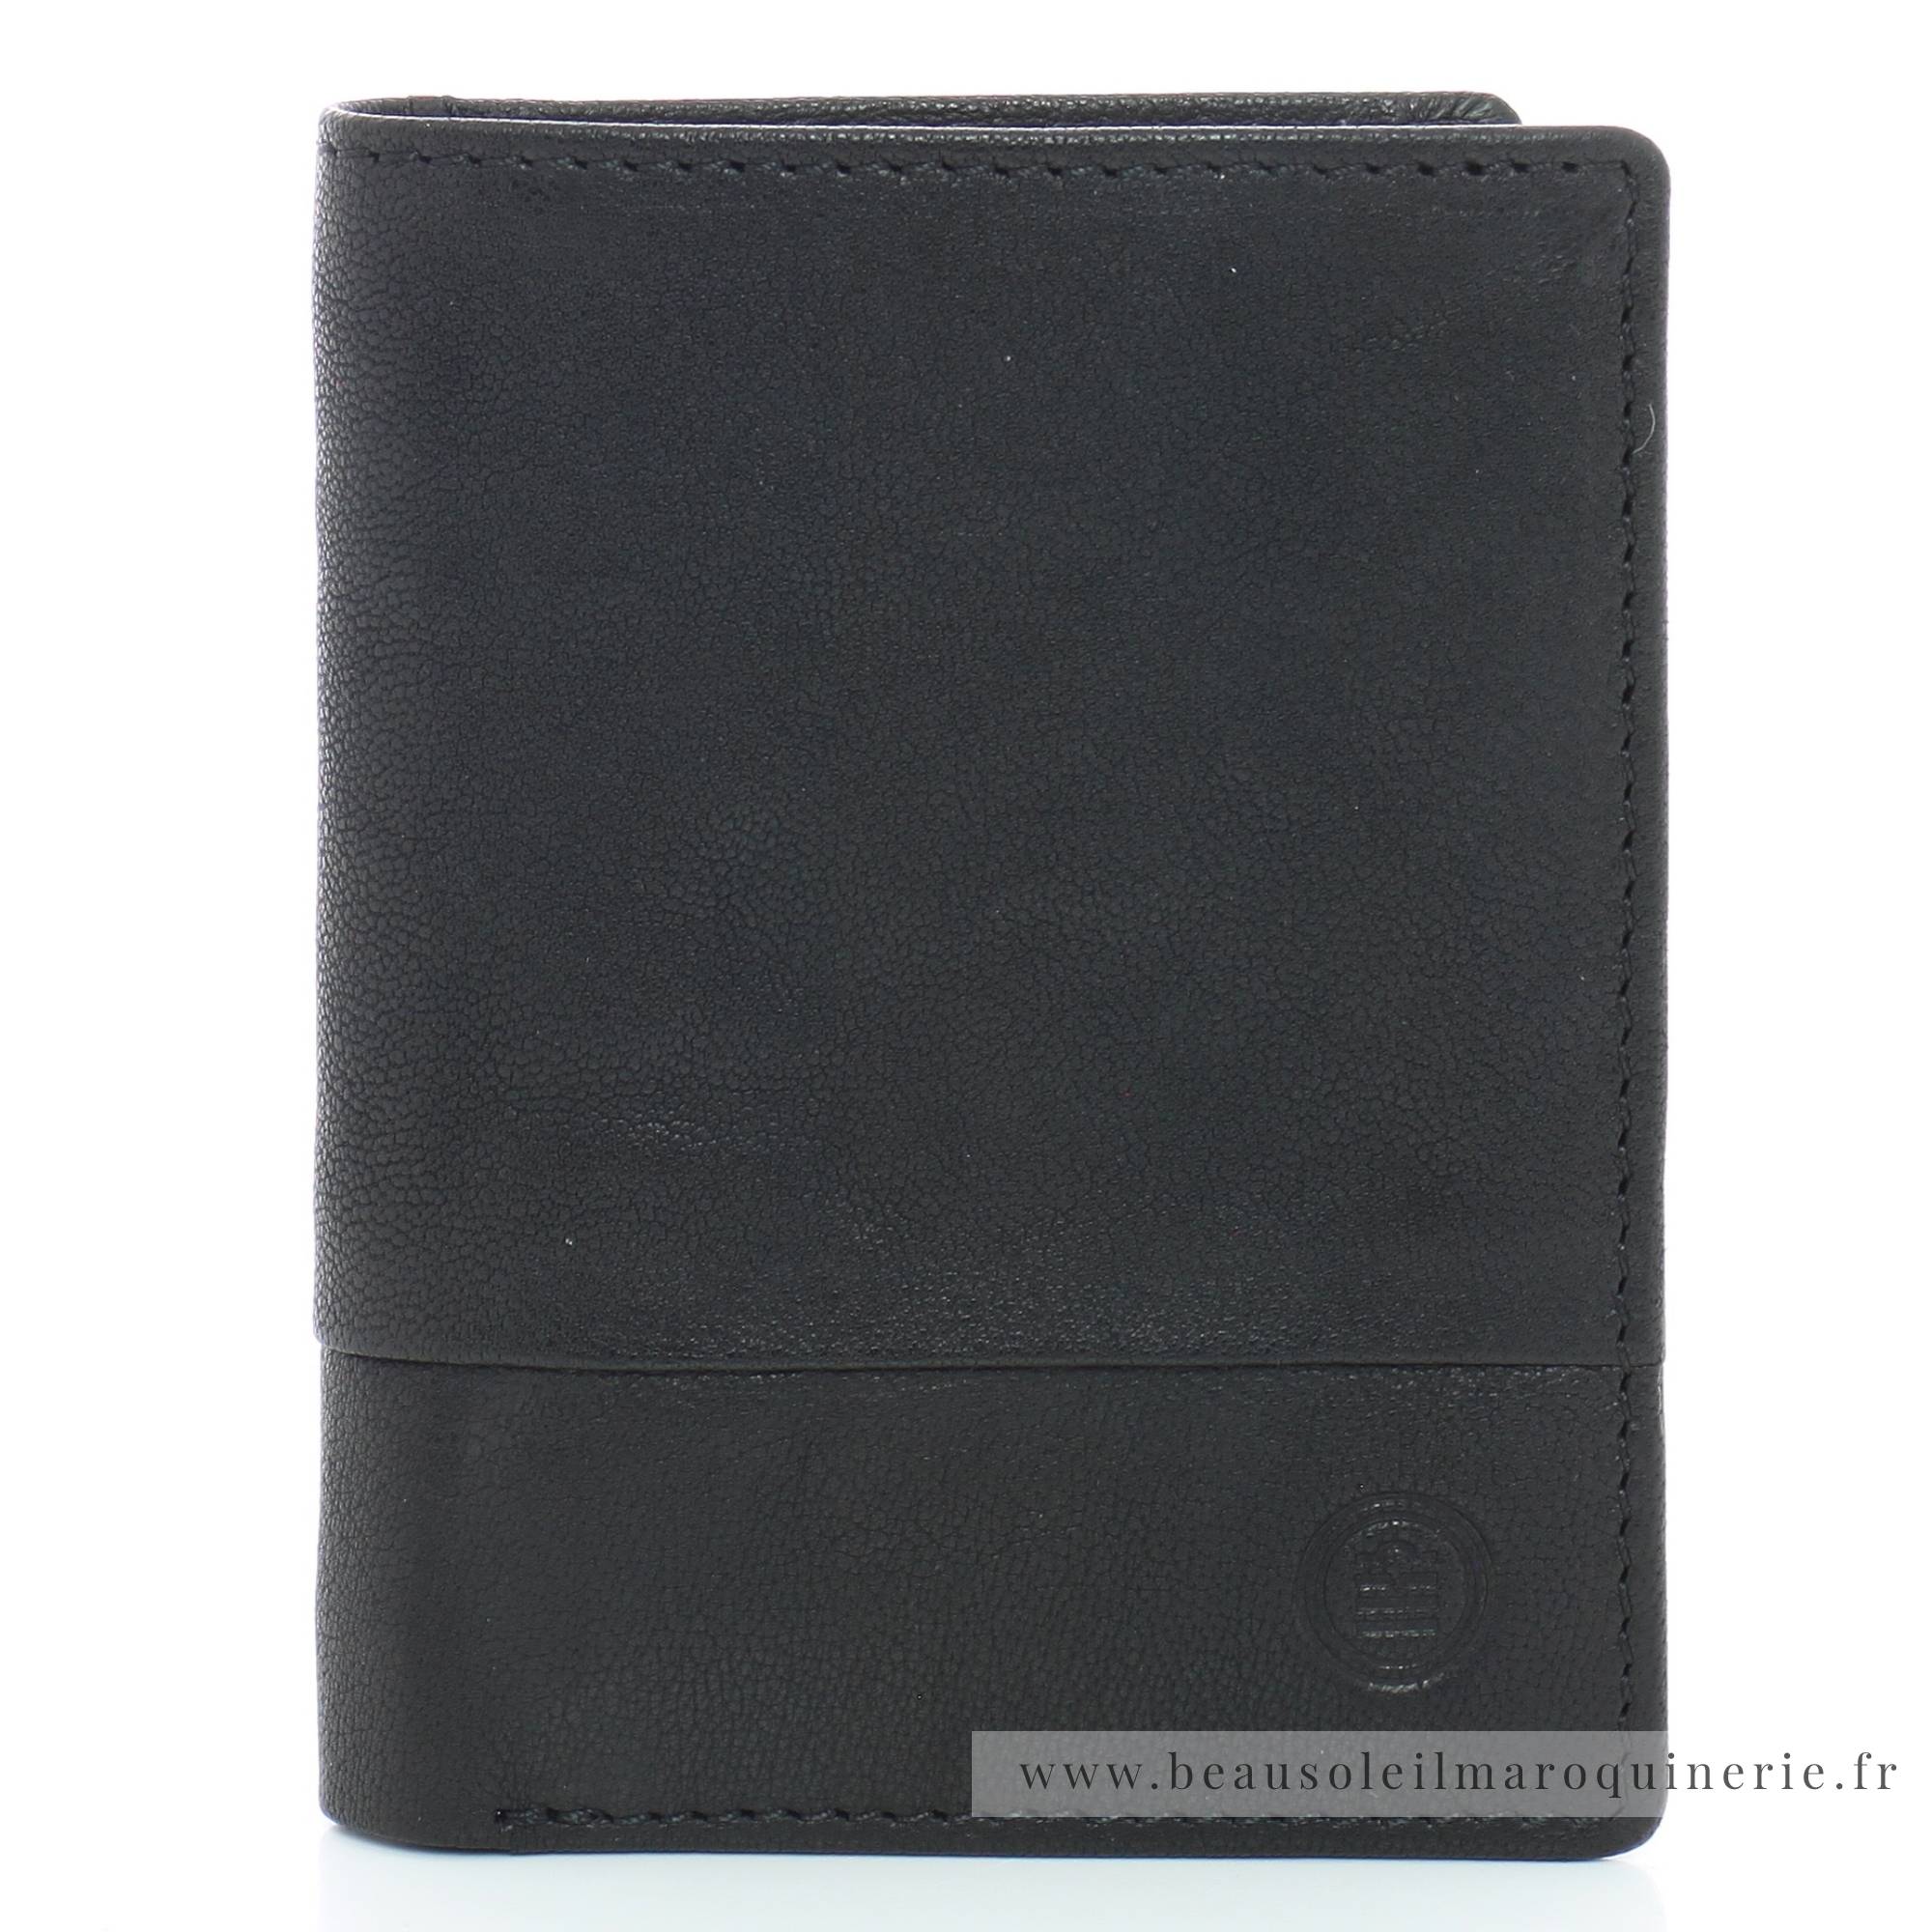 Portefeuille porte-cartes Serge Blanco en cuir ligne Anchorage, référence ANC21056 999 noir face